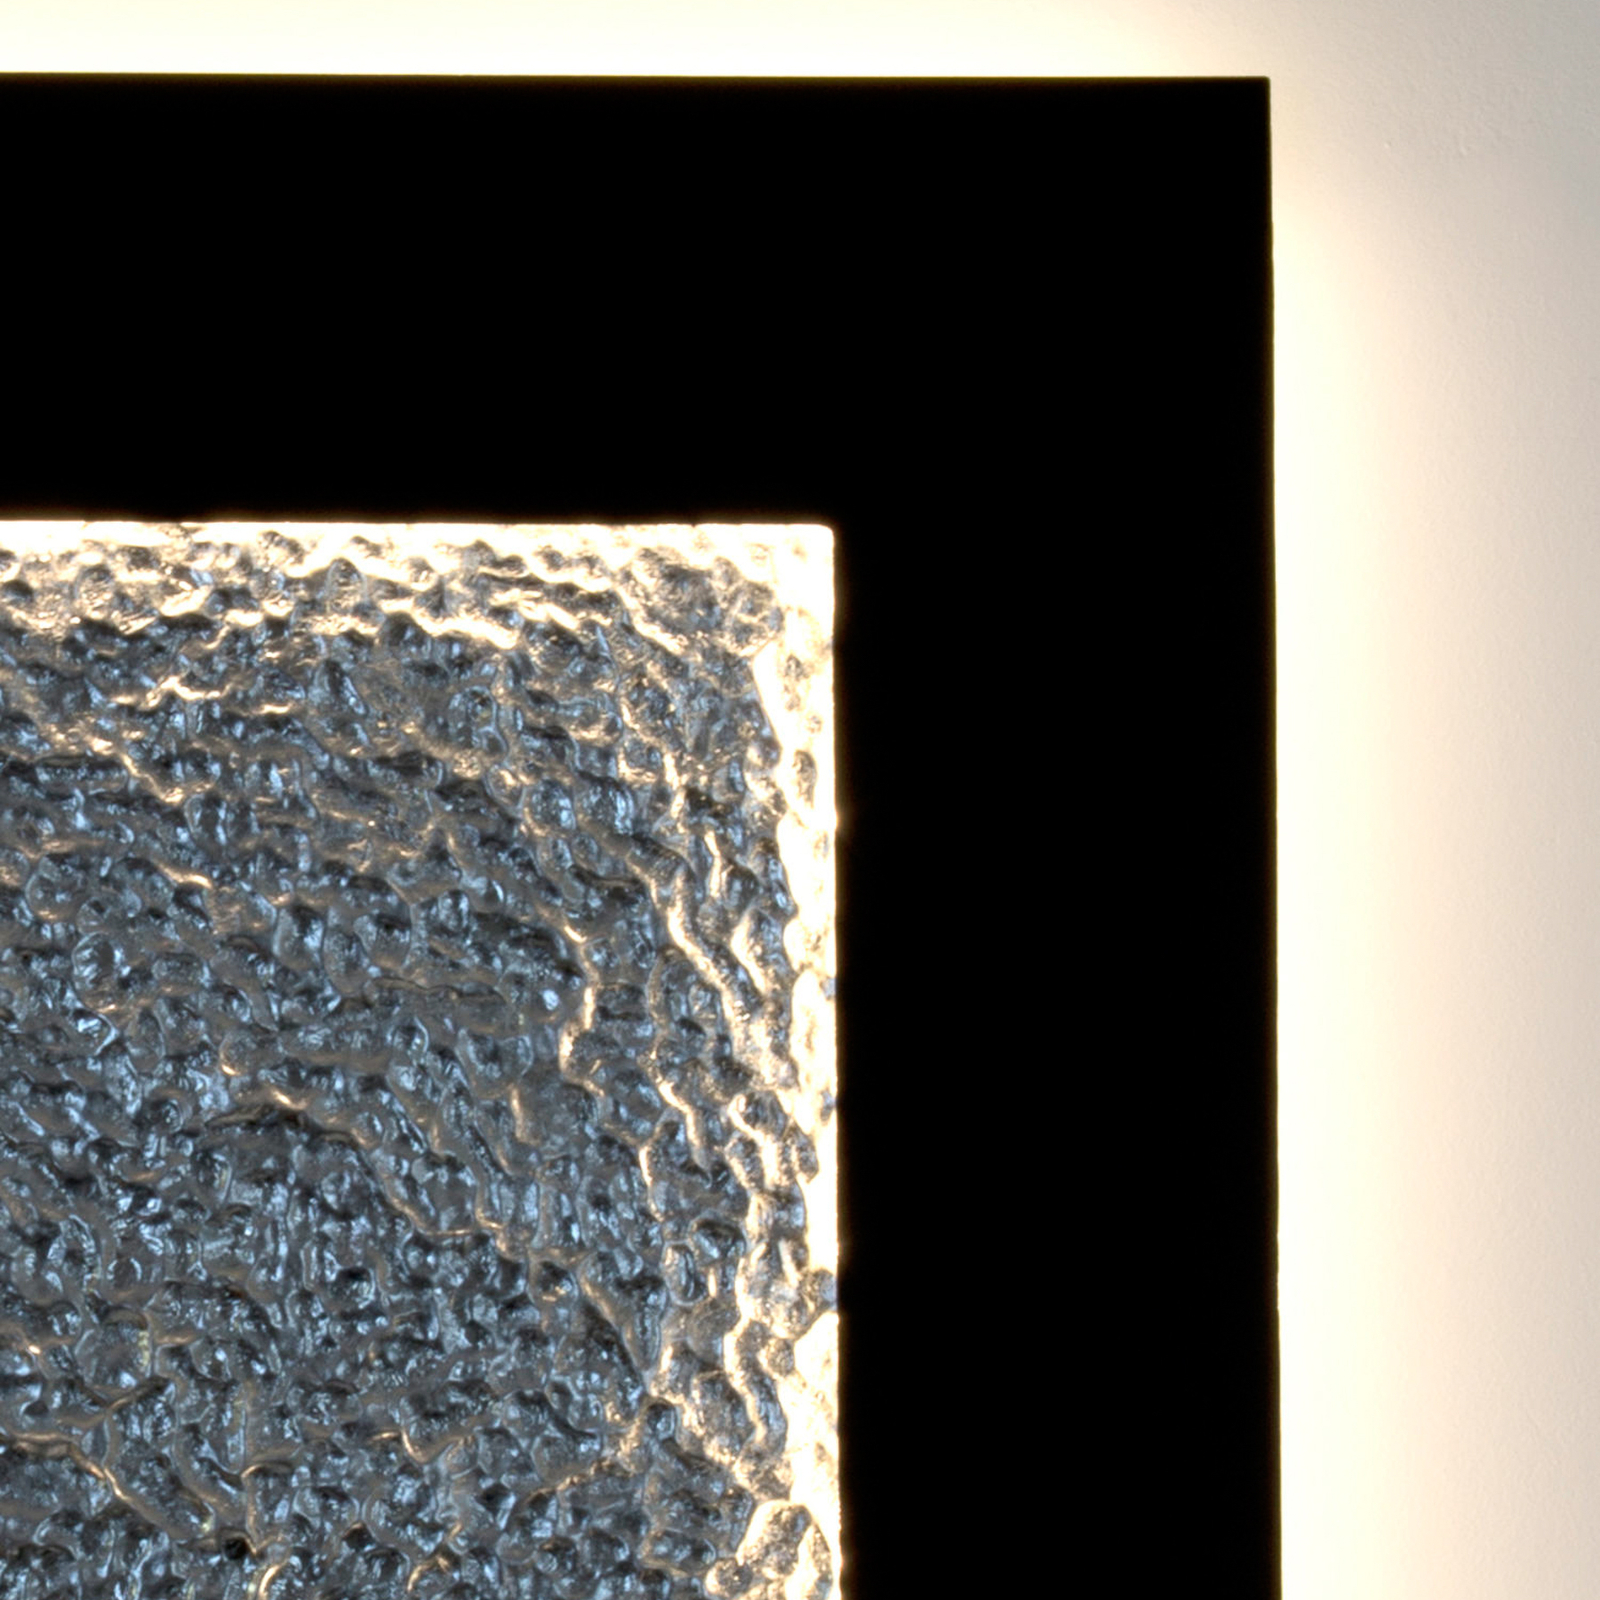 Candeeiro de parede Plenilunio Eclipse LED, castanho/prateado, 80 cm